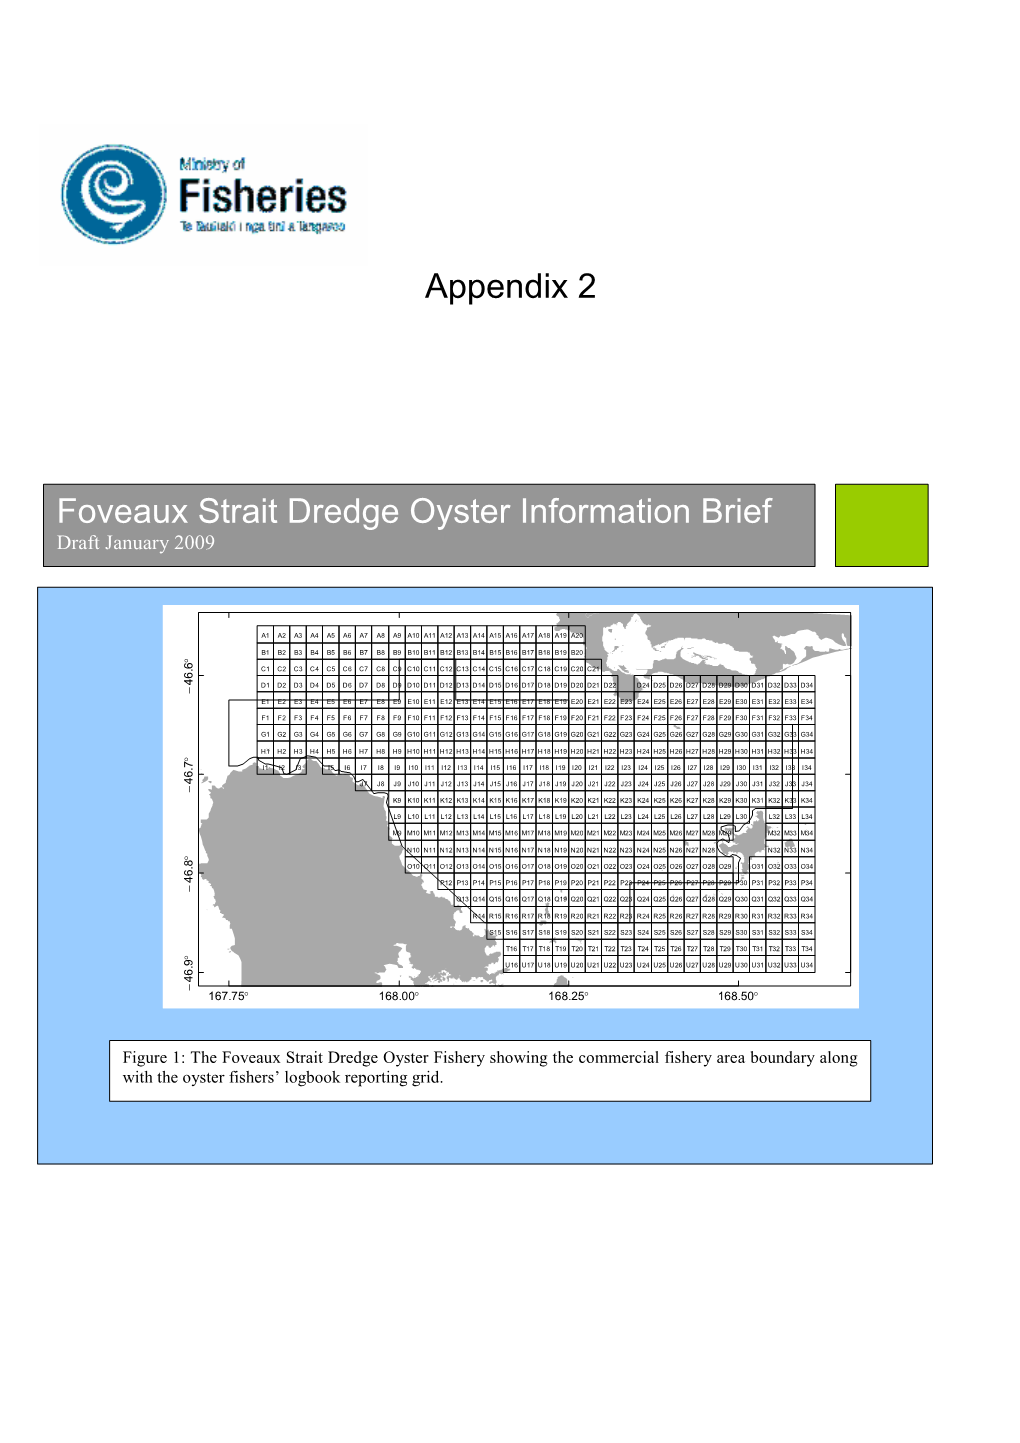 Appendix 2 Foveaux Strait Dredge Oyster Information Brief